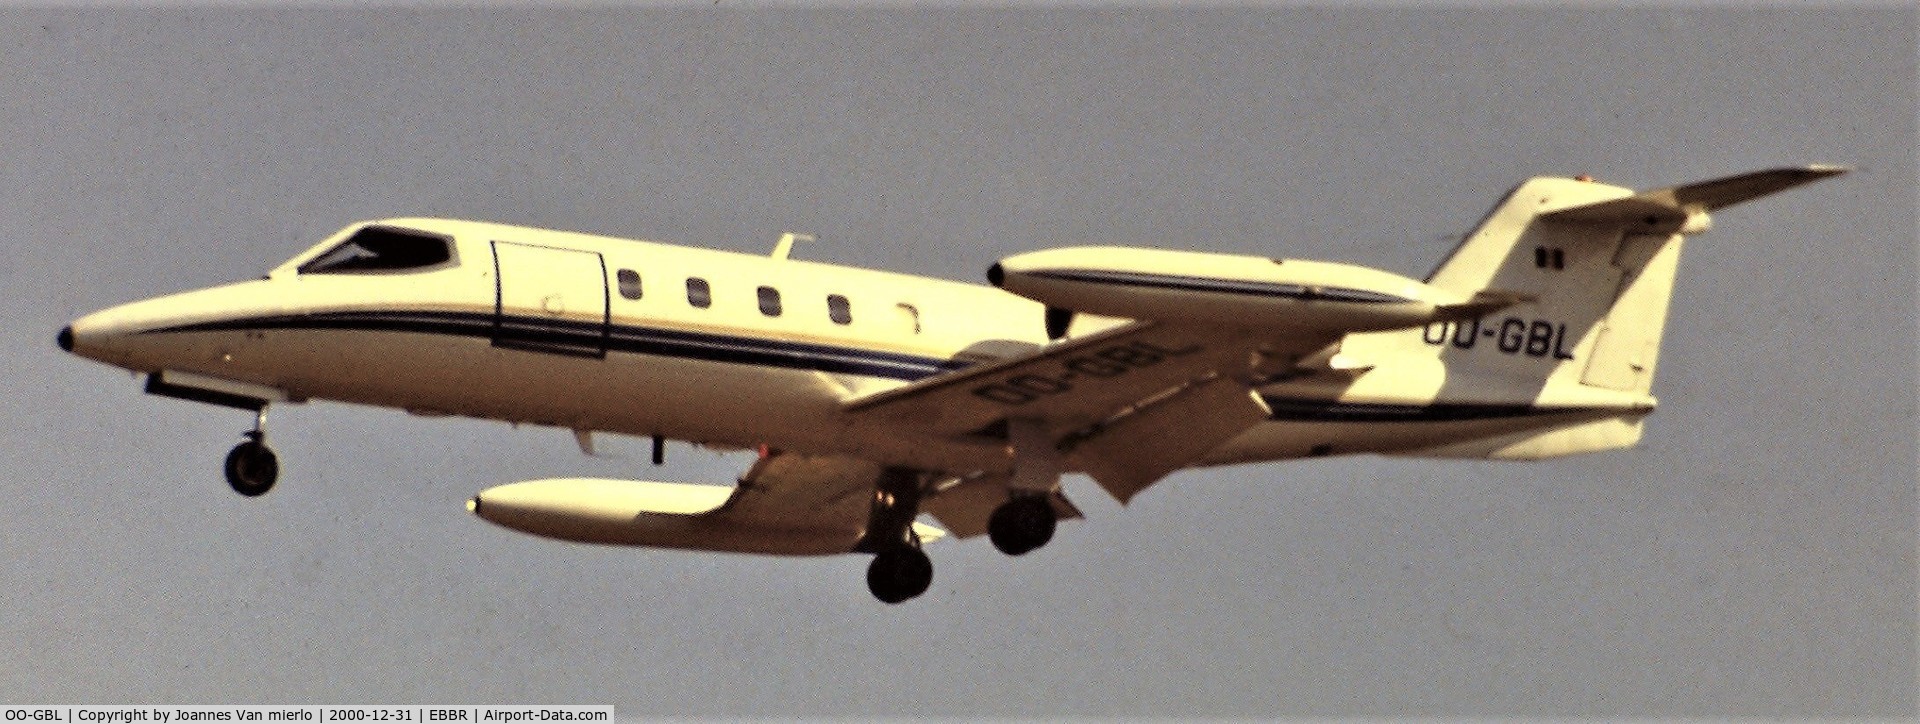 OO-GBL, 1980 Learjet 35A C/N 284, Slide scan